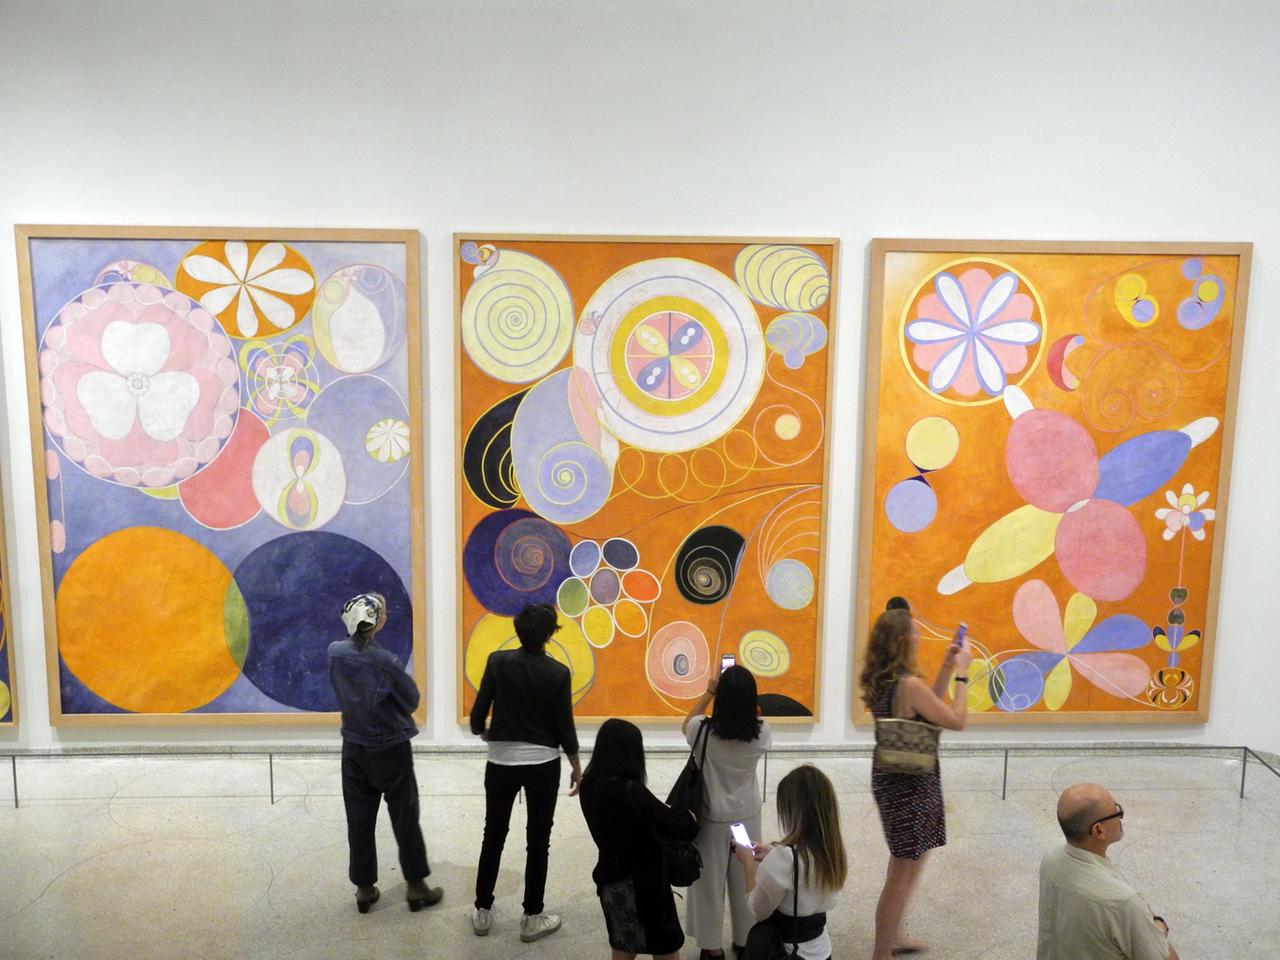 In einem Museum schauen sich Besucher drei große Gemälde der schwedischen Malerin Hilma af Klint an. Es sind abstrakte Bilder.